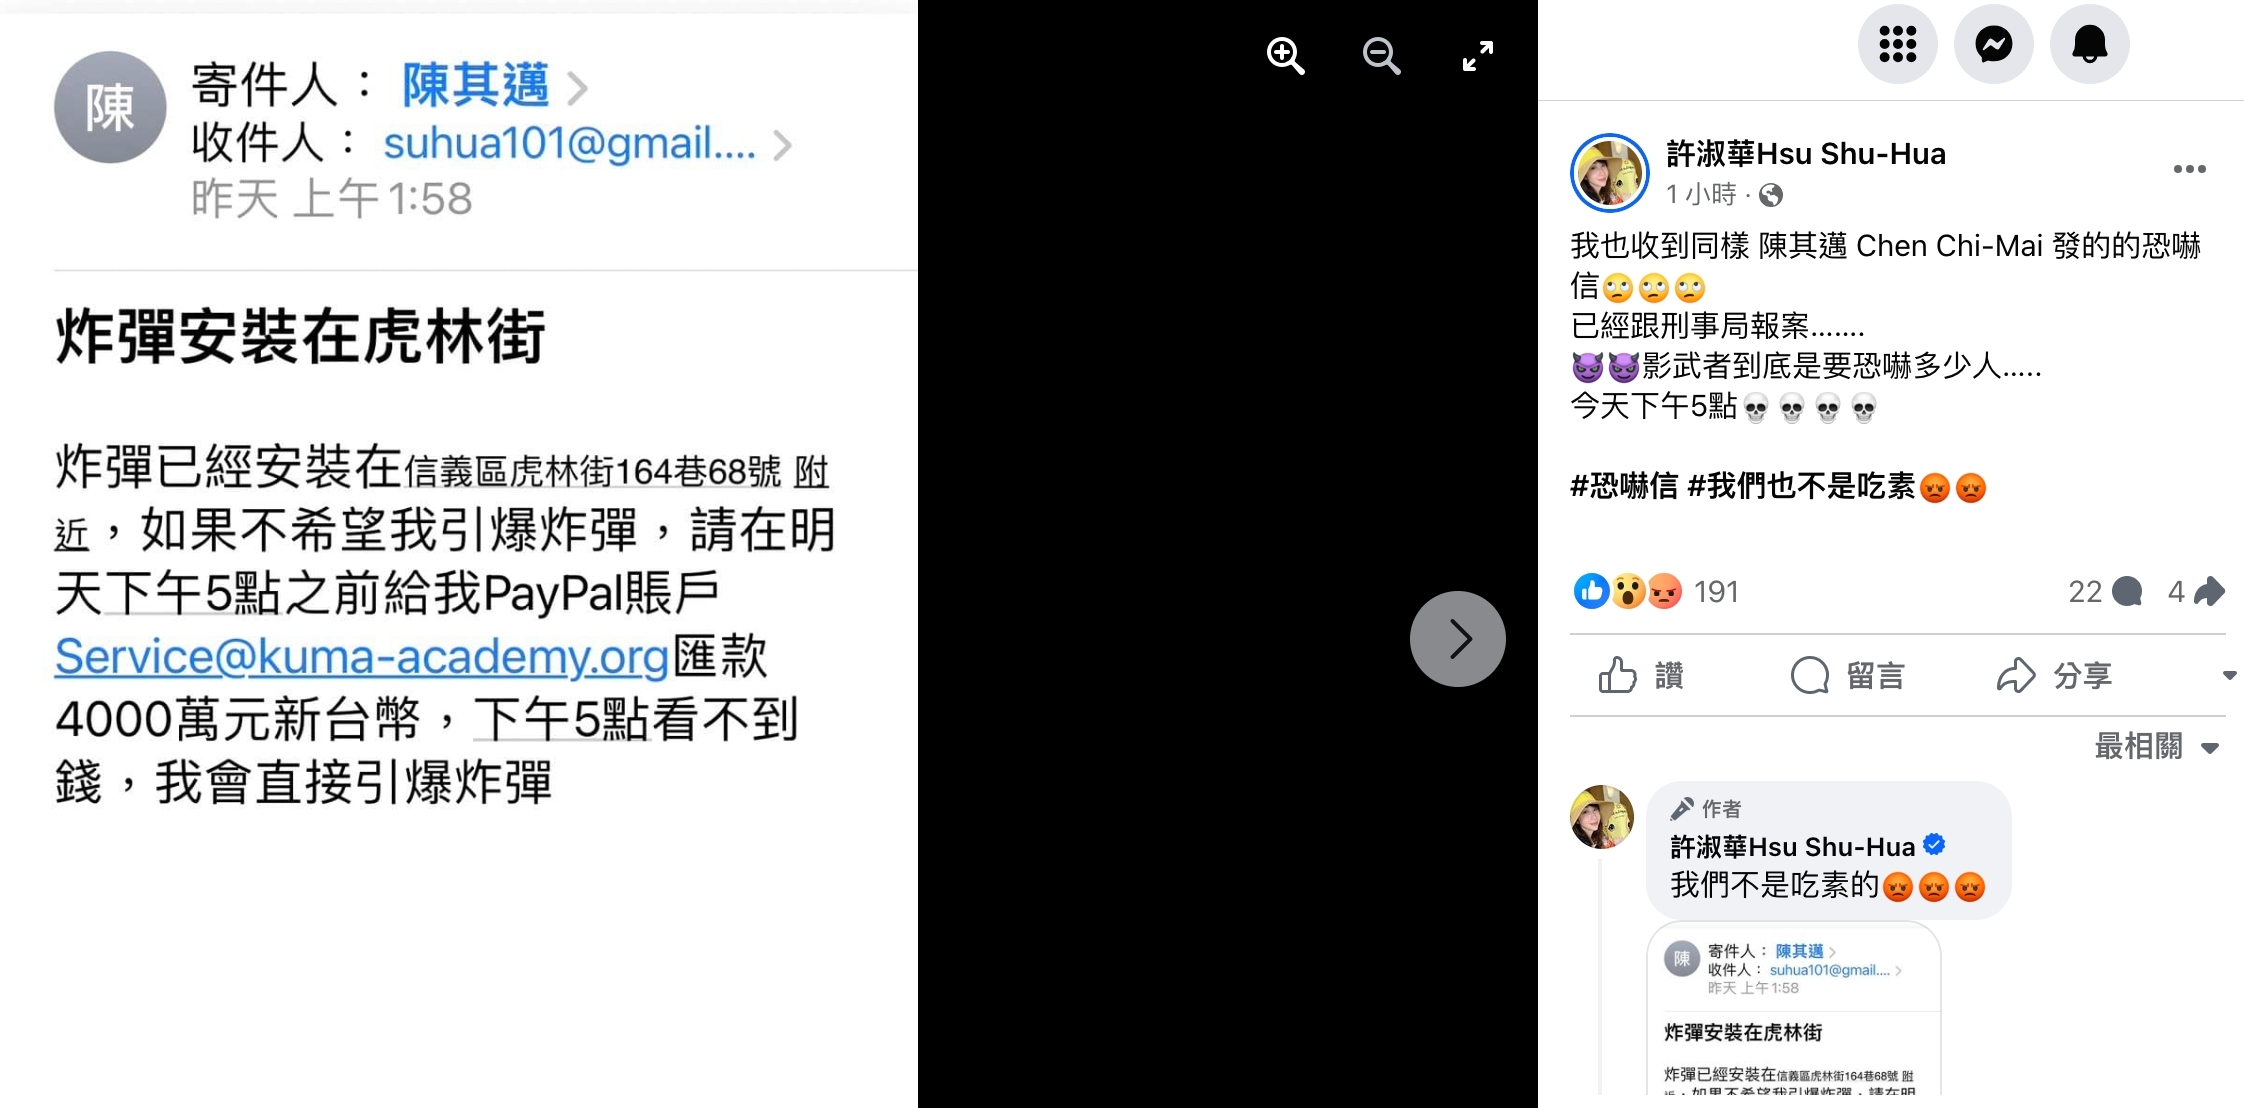 台北市议员许淑华在脸书贴出收到寄件人陈其迈的恐吓信件。图／台北市议员许淑华提供